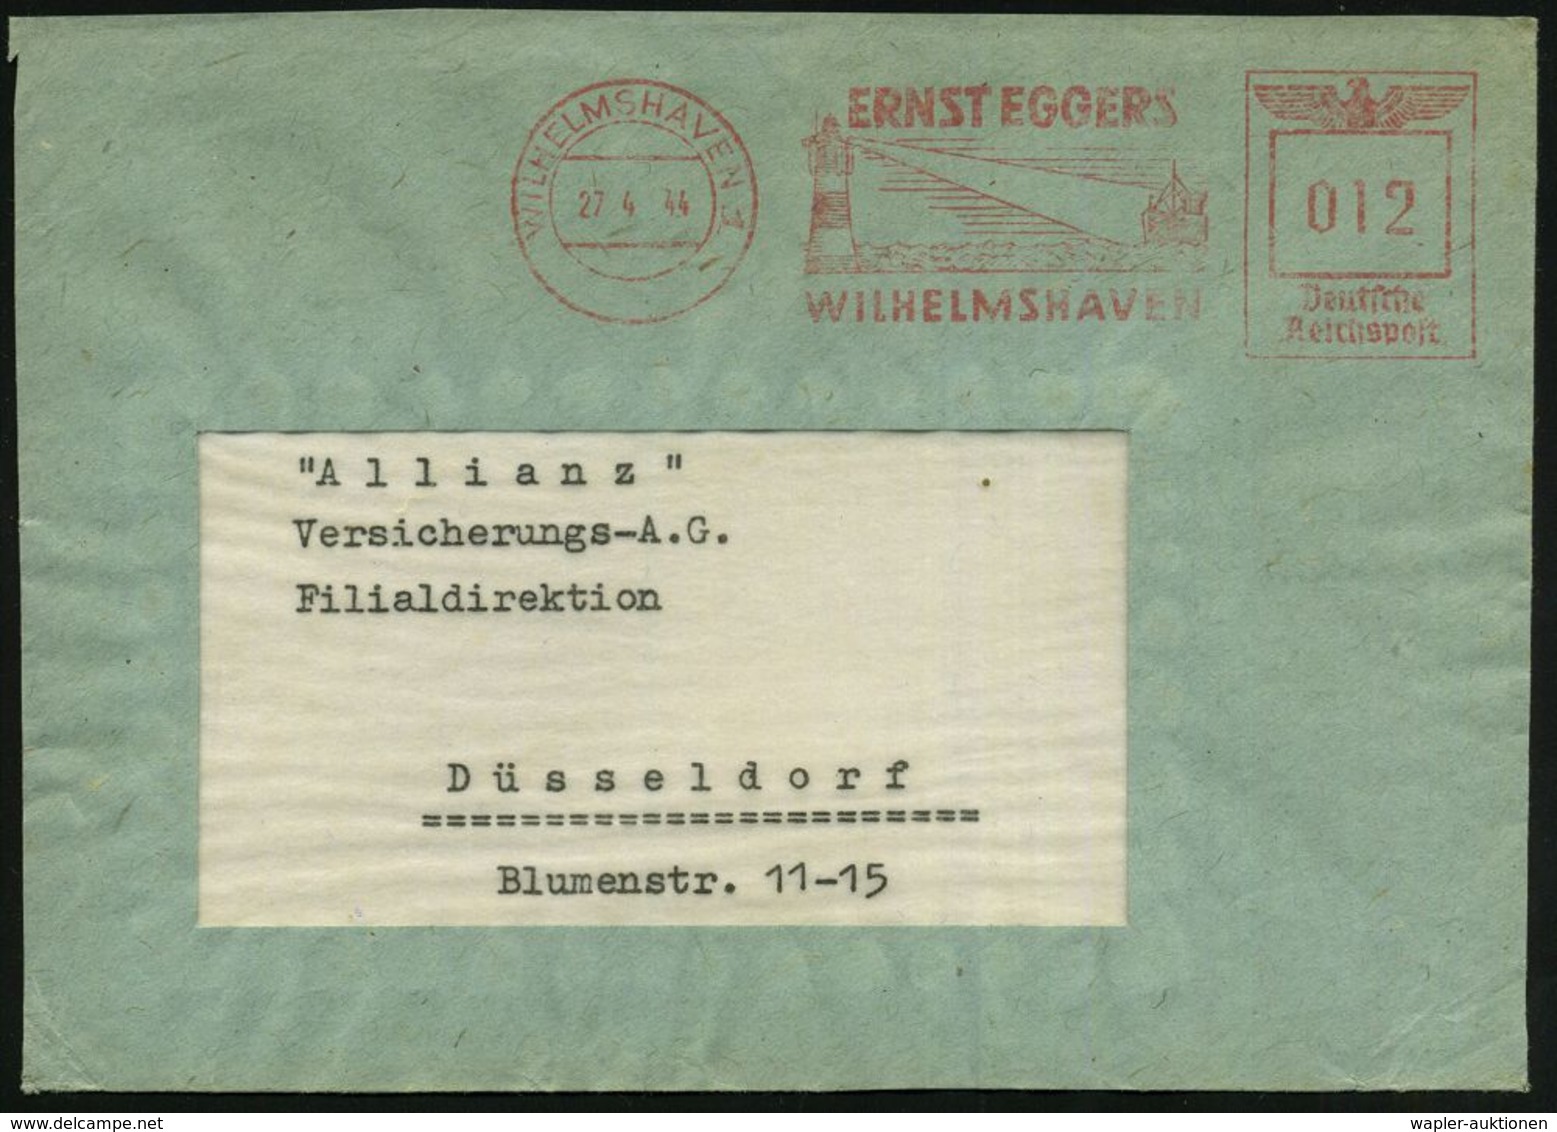 WILHELMSHAVEN 1/ ERNST EGGERS 1944 (27.4.) Dekorat. AFS = Leuchtturm (mit Lichtkegel Erfasst Schiff) Bedarfs-Vorderseite - Phares